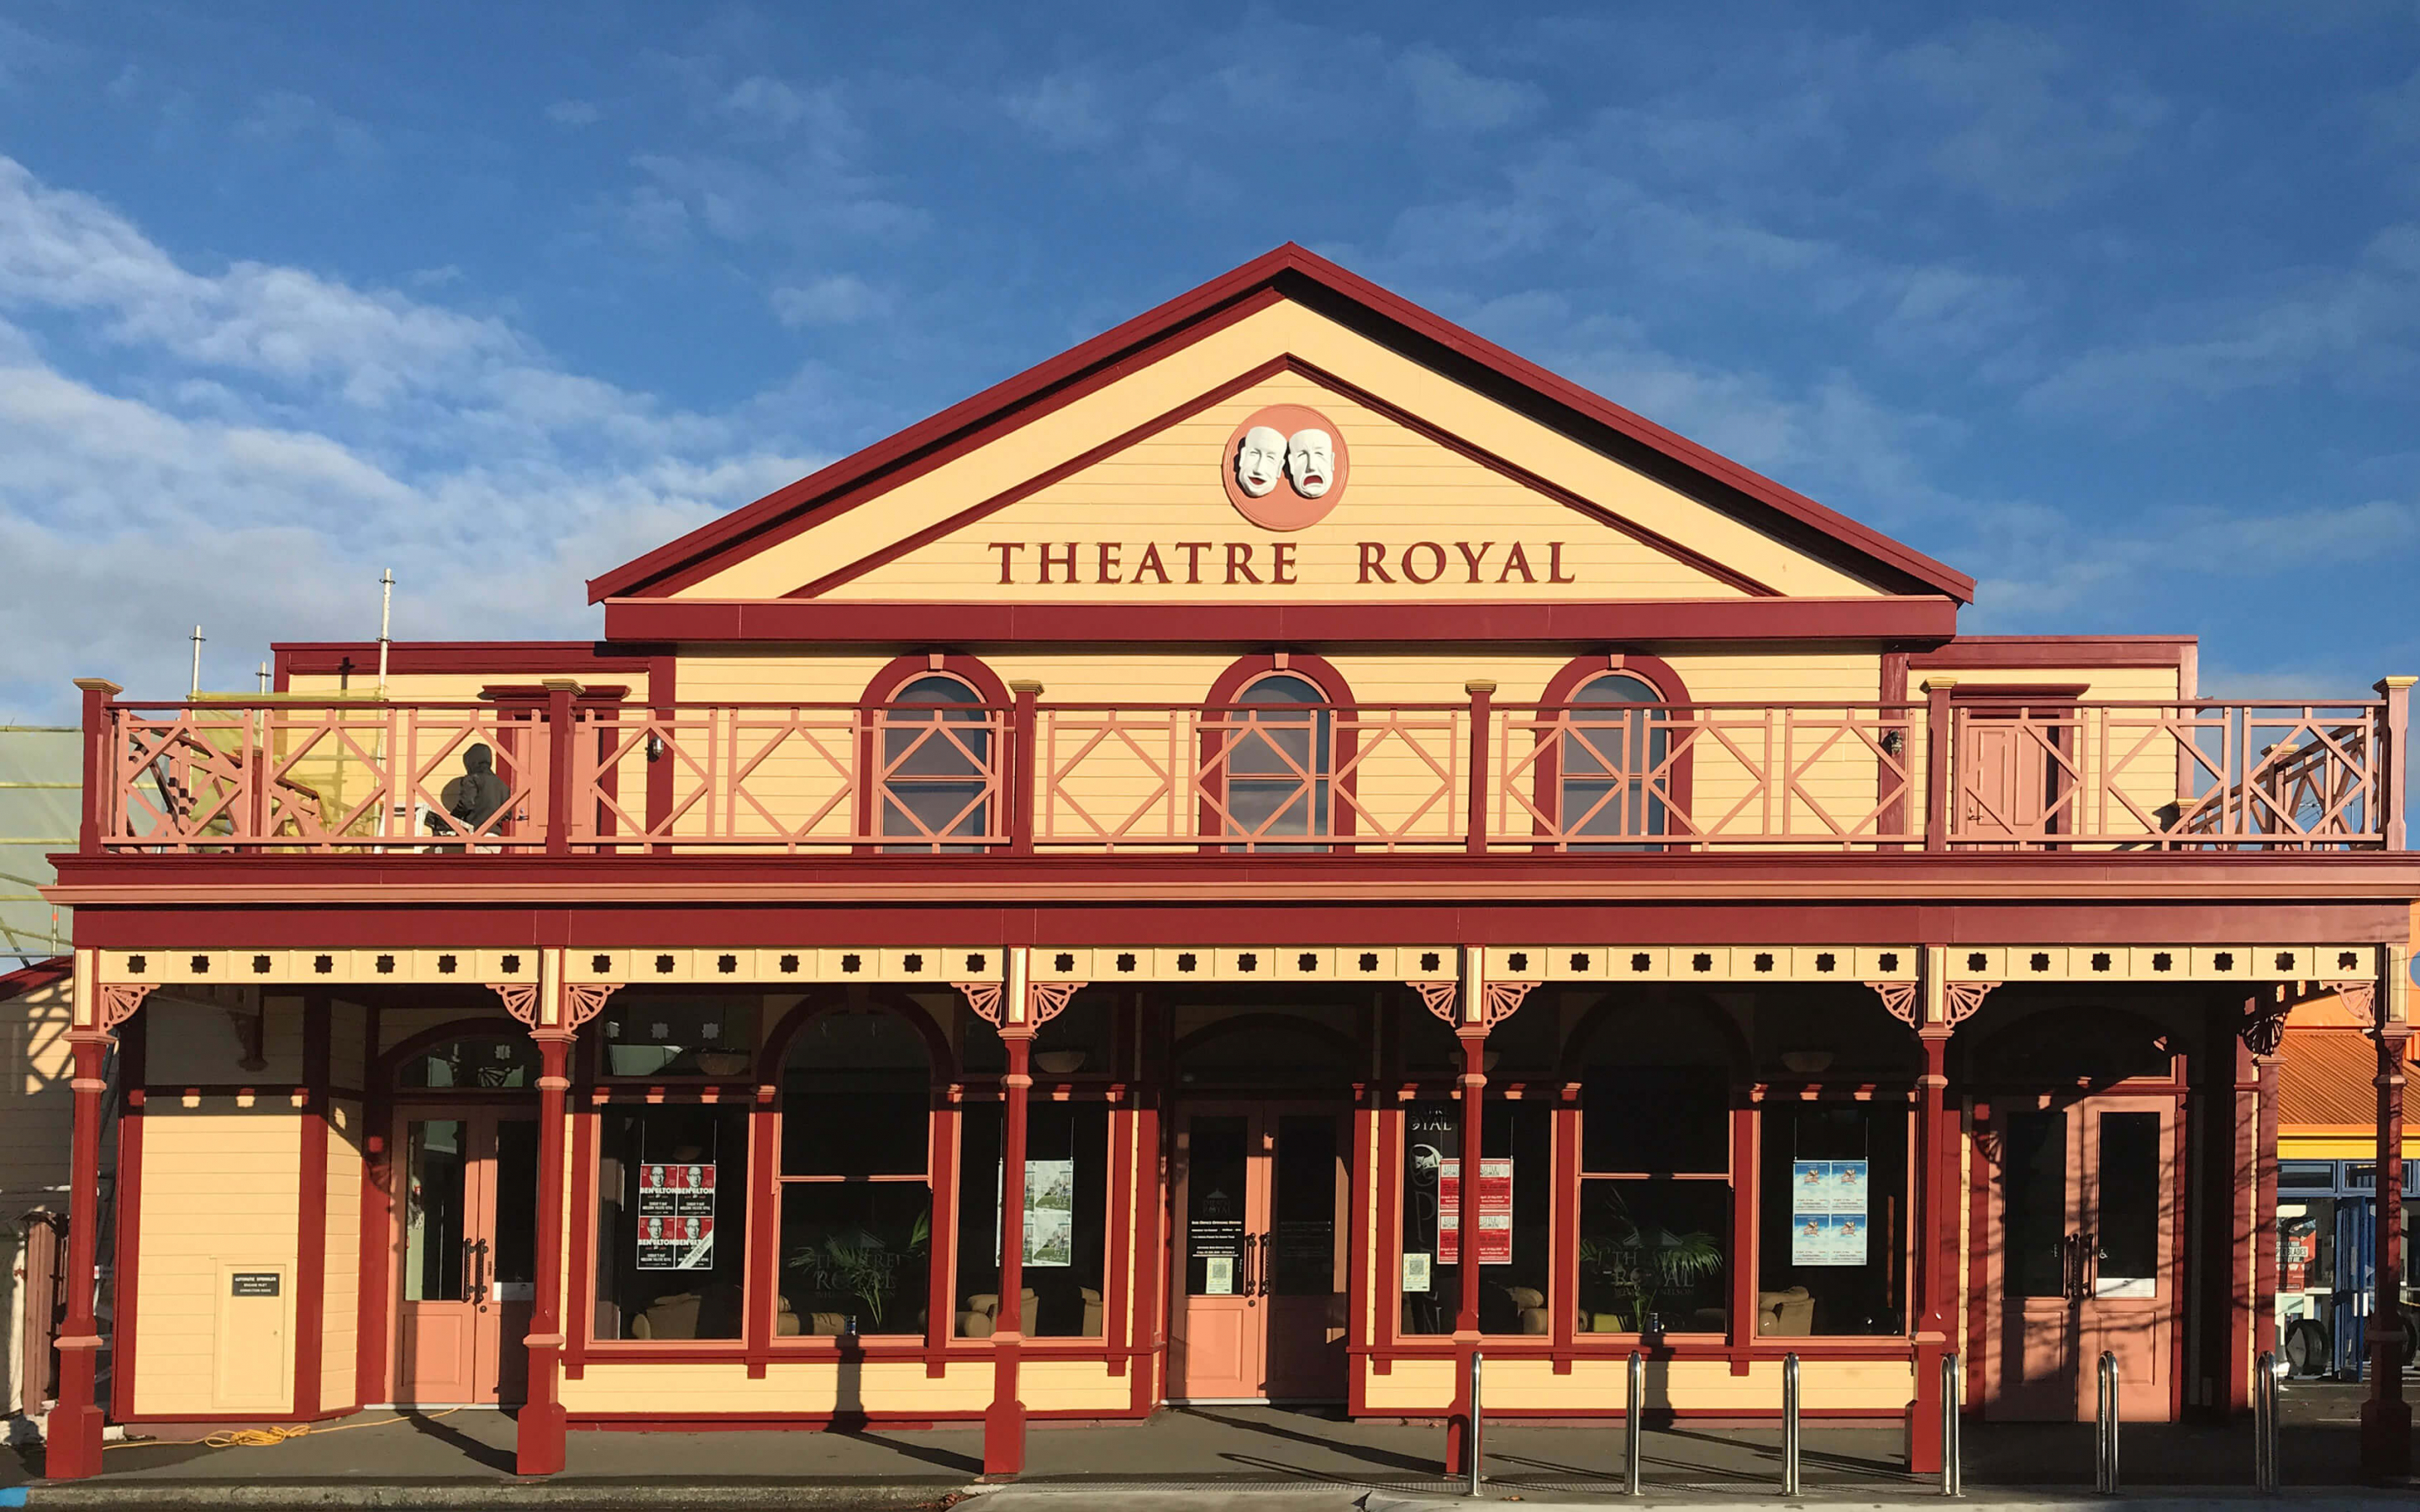 Theatre Royal facade